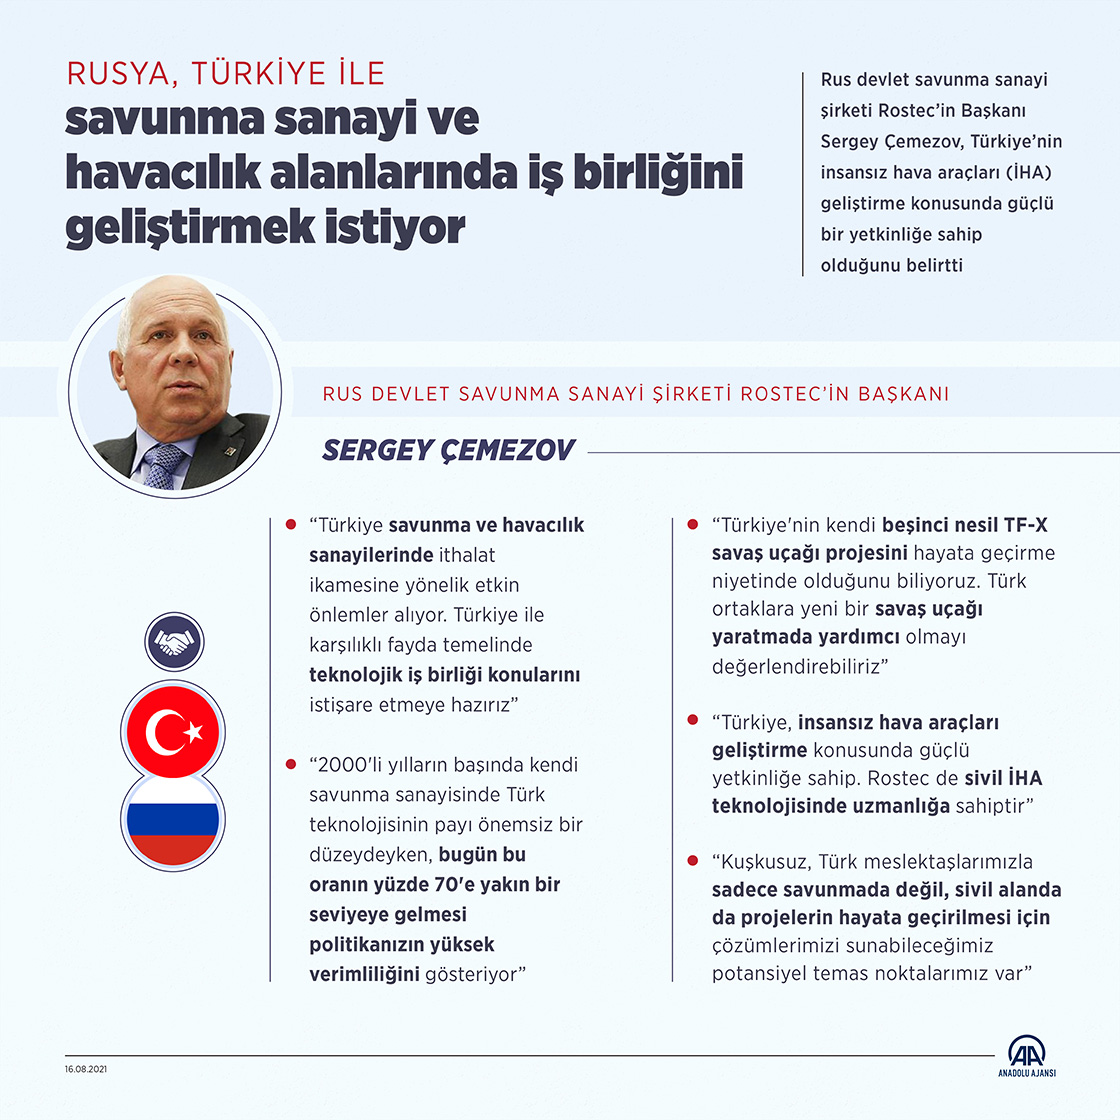 Rusya, Türkiye ile savunma sanayisi ve havacılıkta iş birliğini geliştirmek istiyor